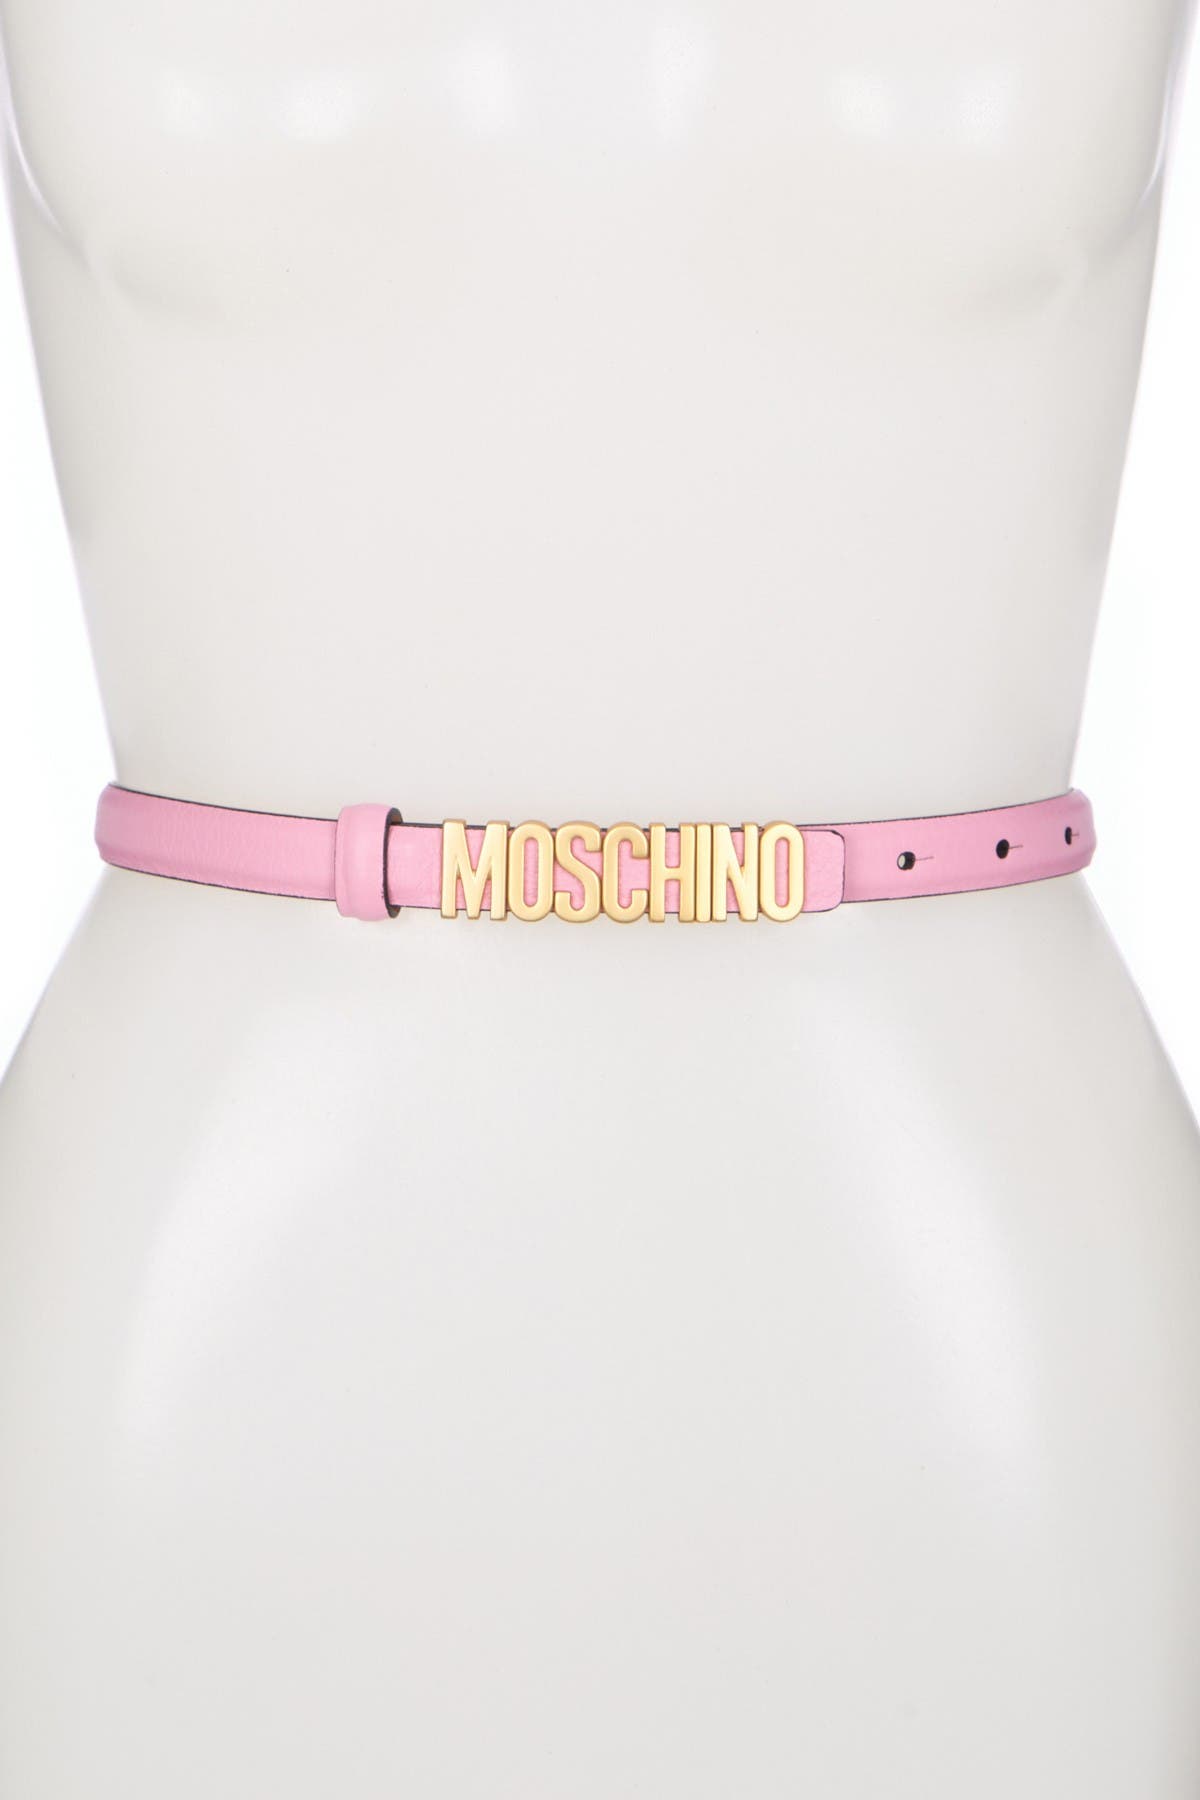 moschino thin belt